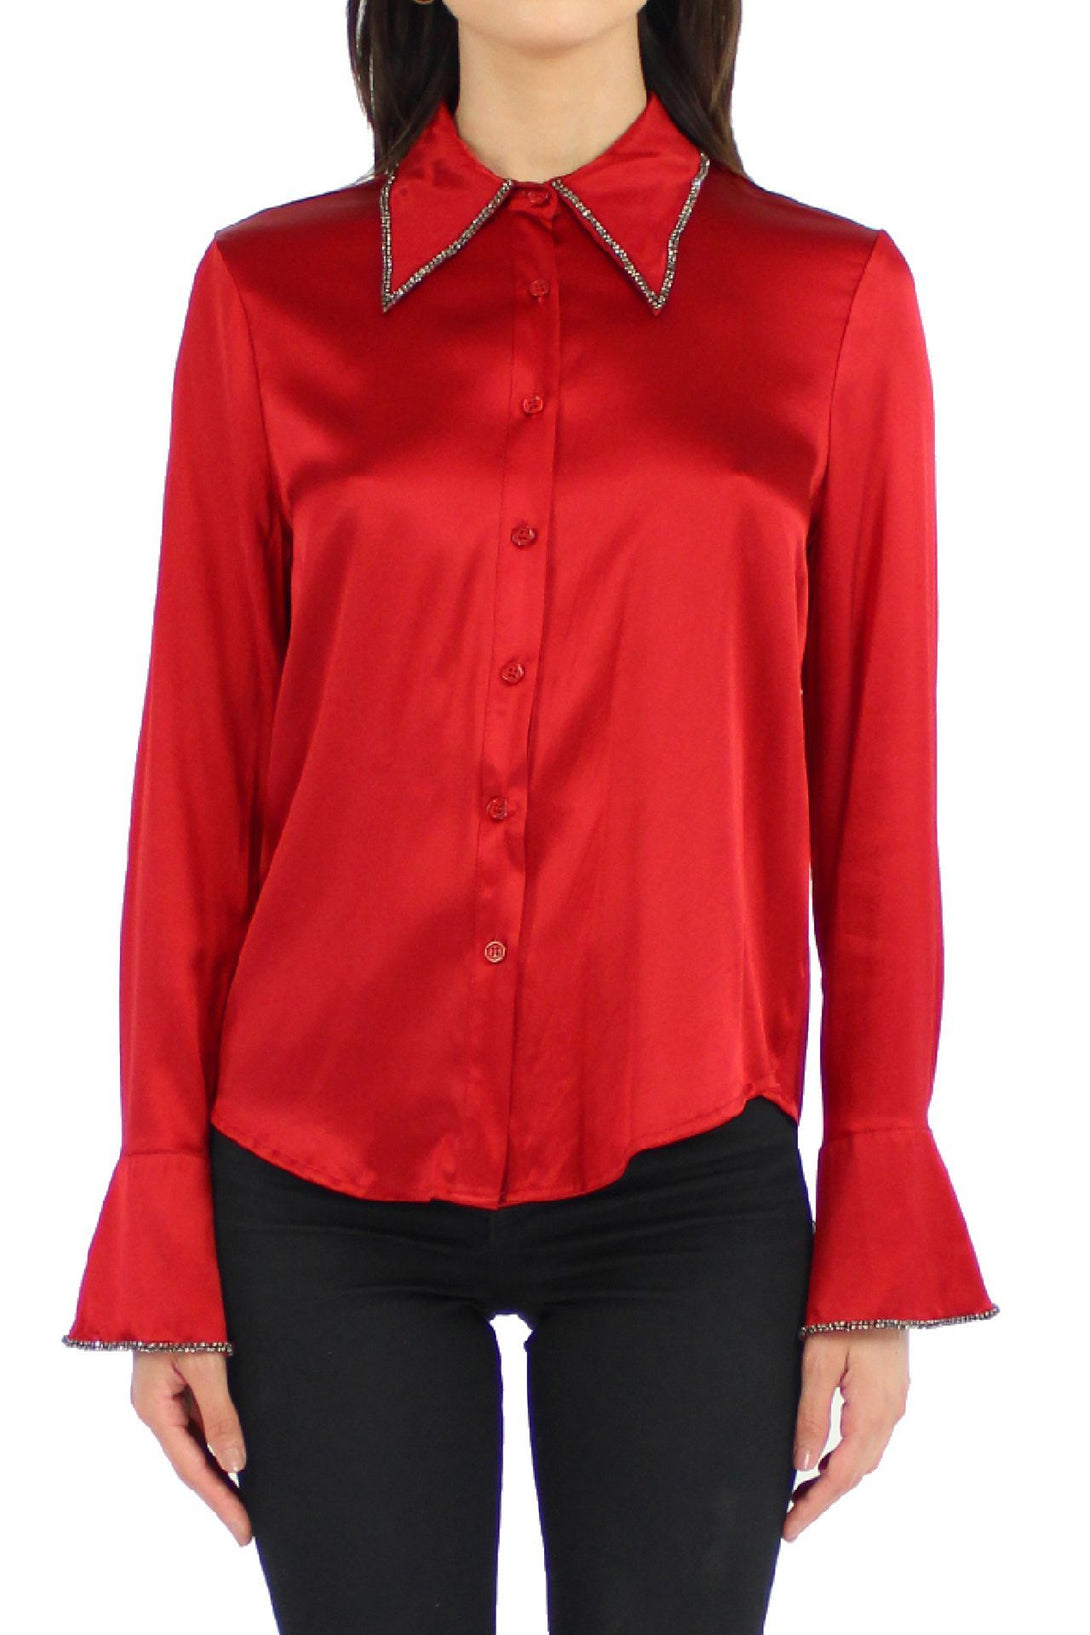 Designer-Buttondown-Shirt-In-Red-By-Kyle-Richard